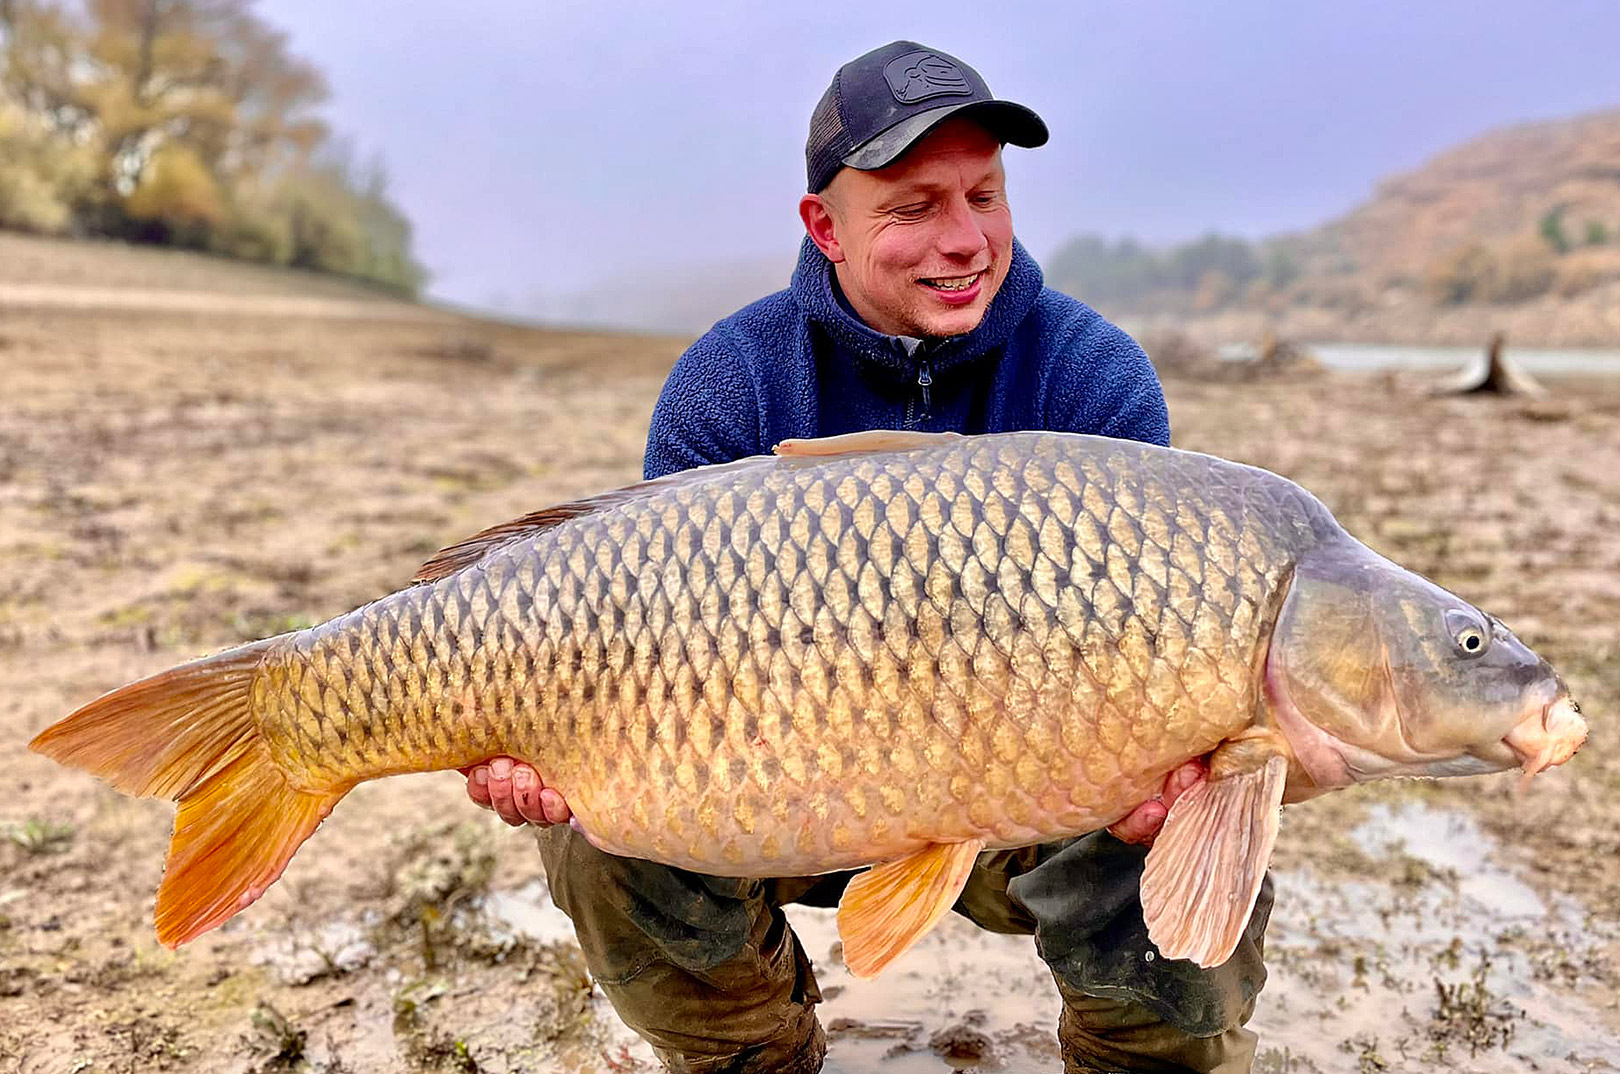 Rasmus med en af sine flotte skælkarper frqa Ebrofloden., Denne flotte fisk vejede over 20 kilo.